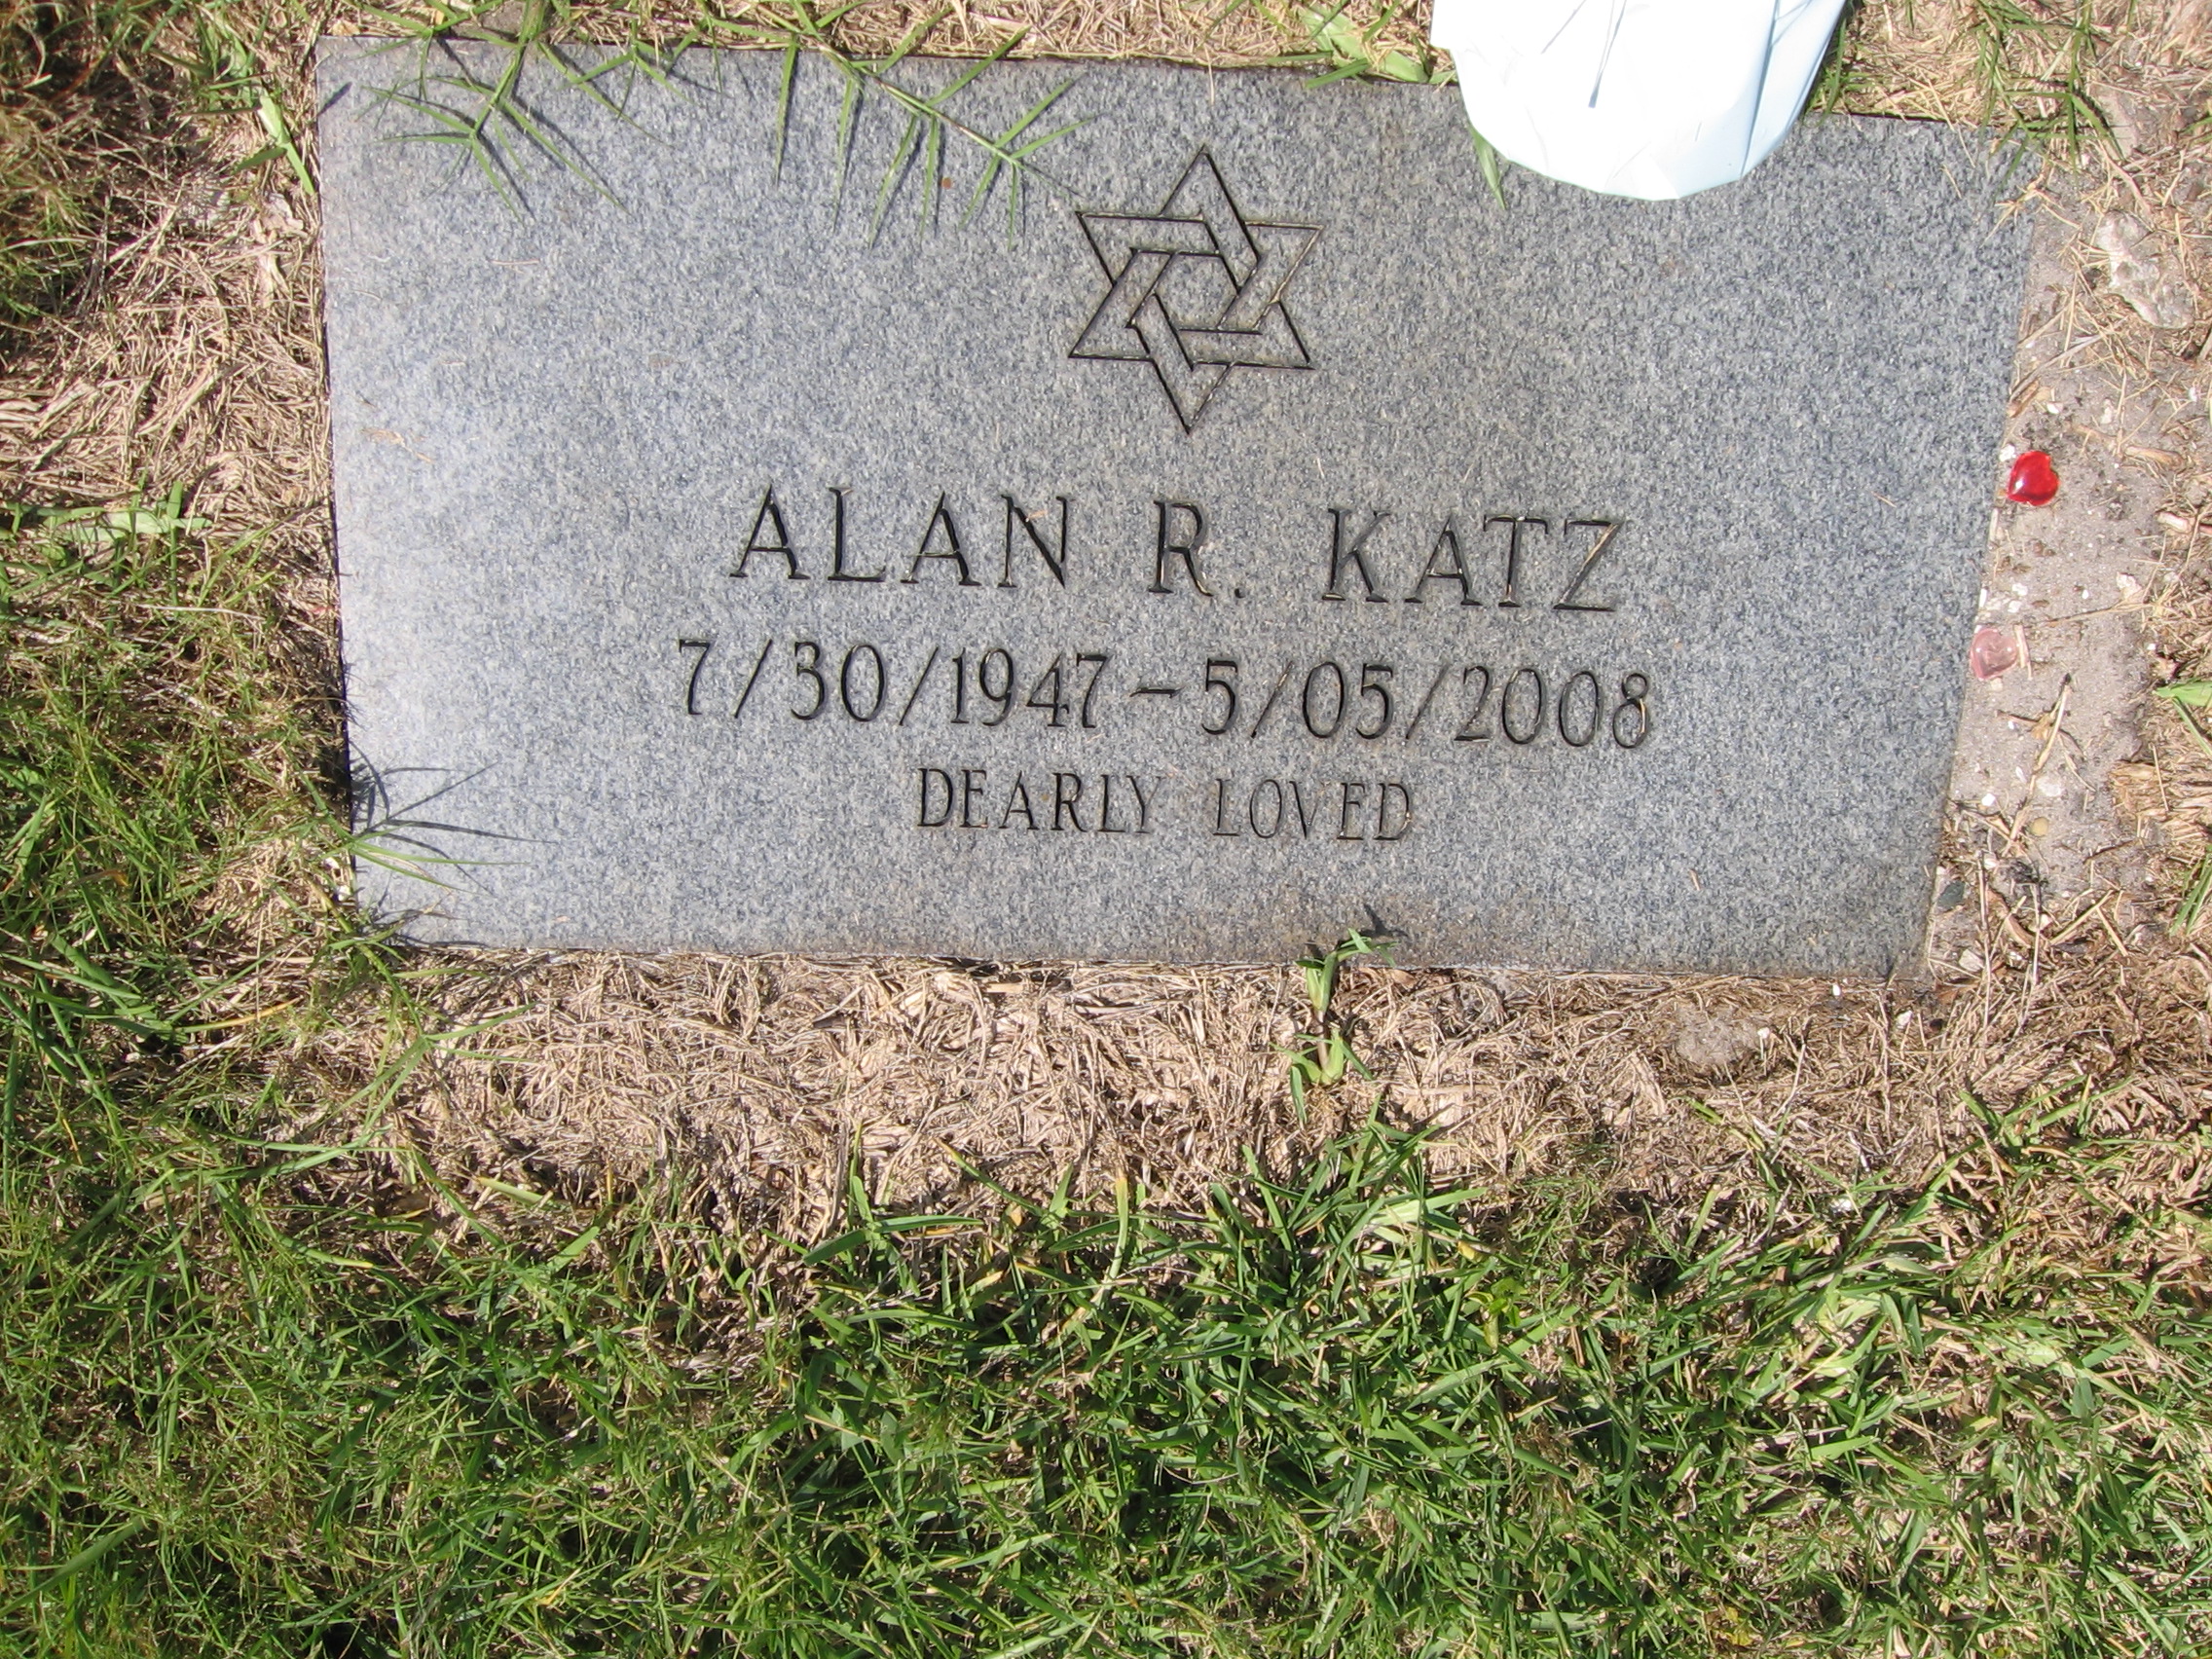 Alan R Katz